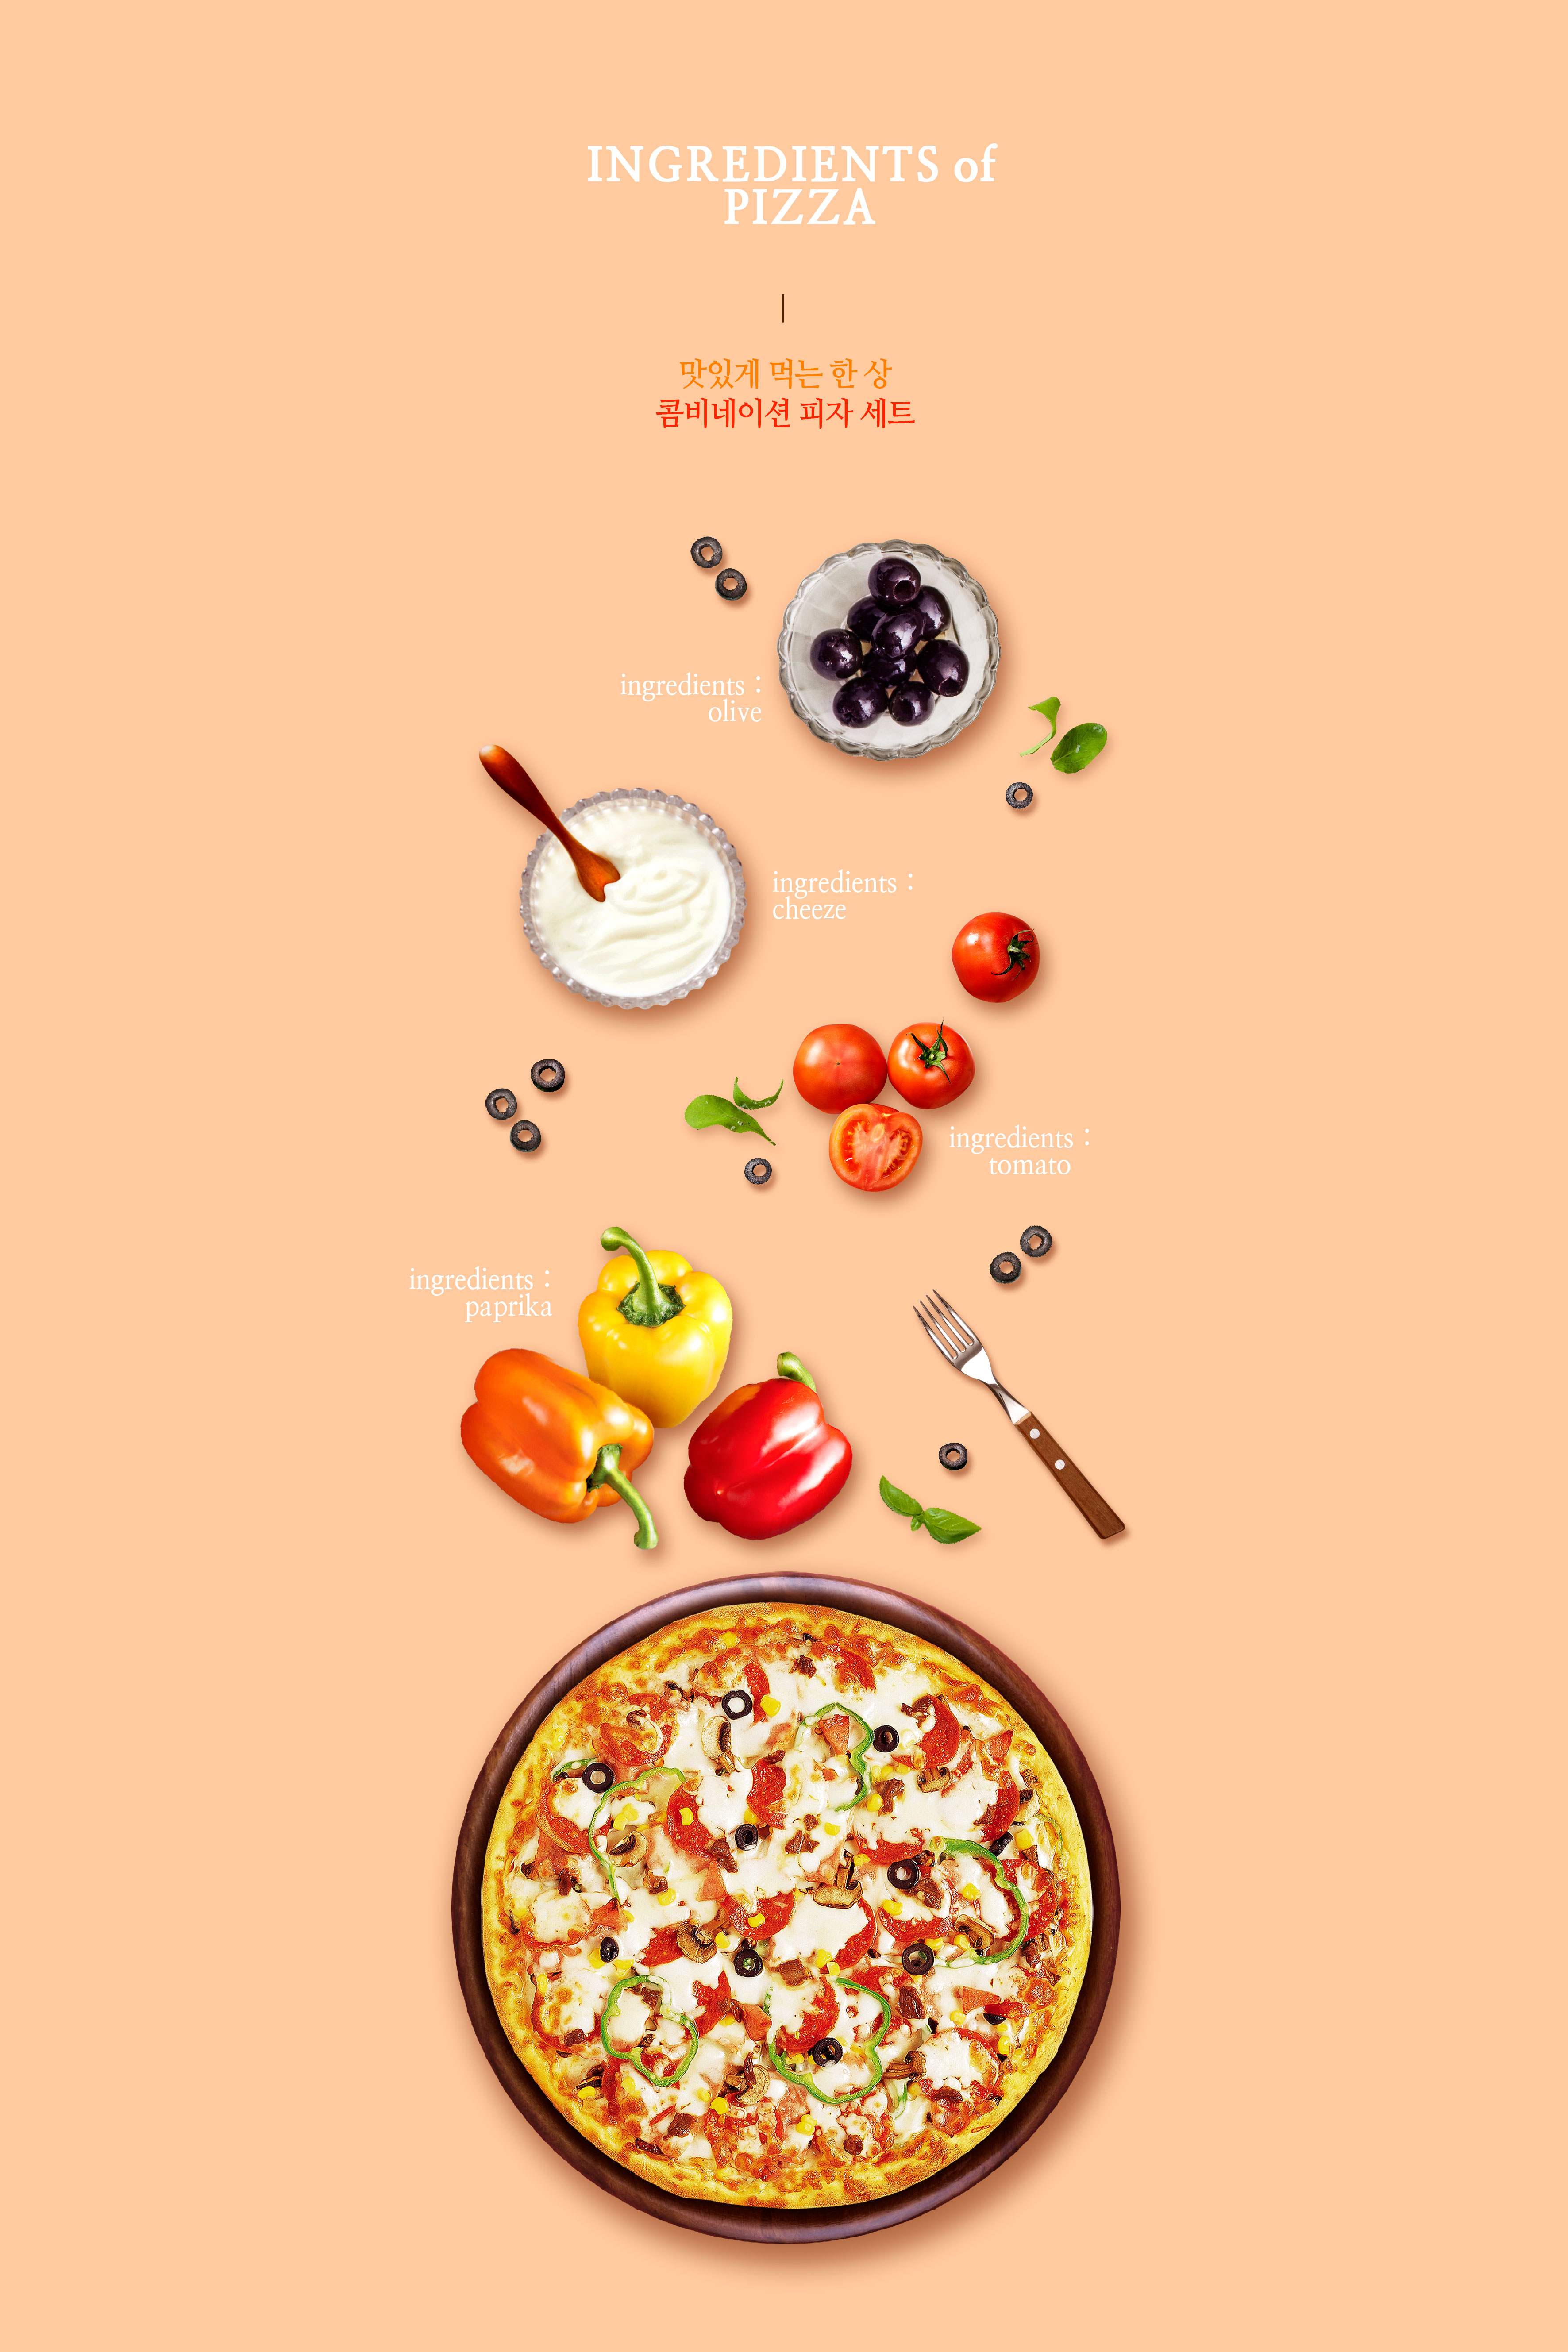 蔬菜披萨美食促销广告海报psd模板 #783944